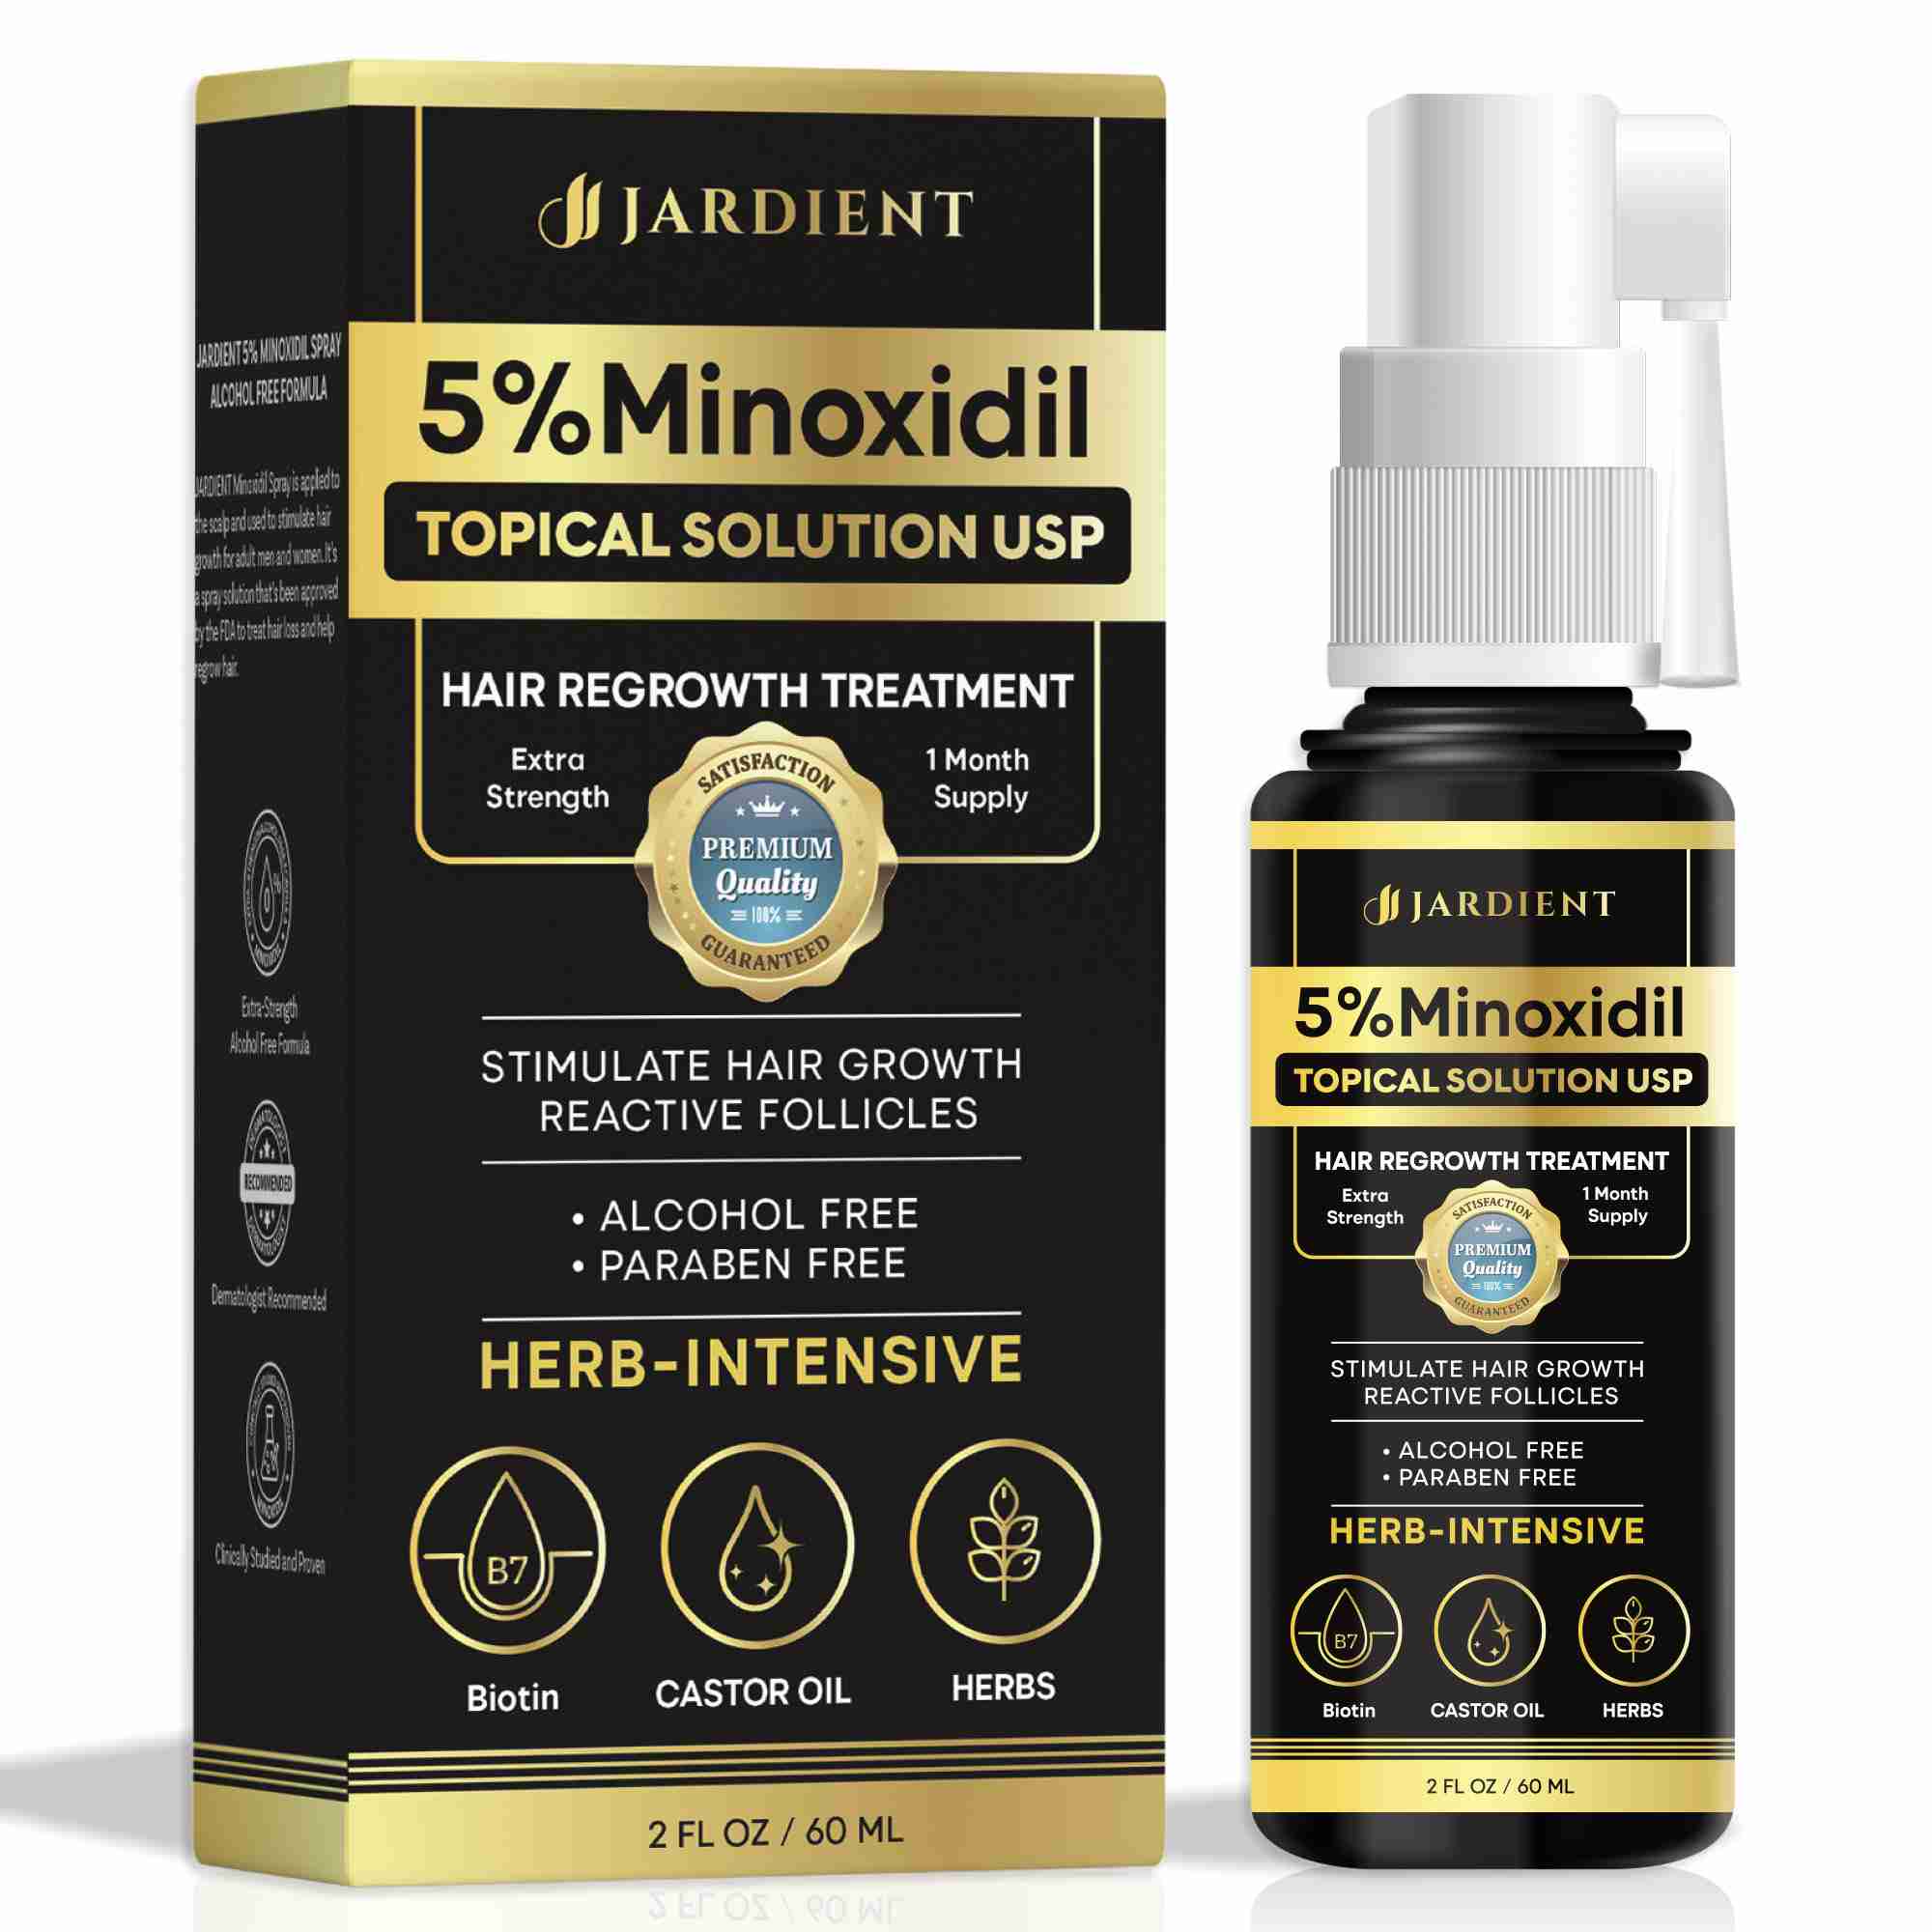 minoxidil-for-men-beard with cash back rebate